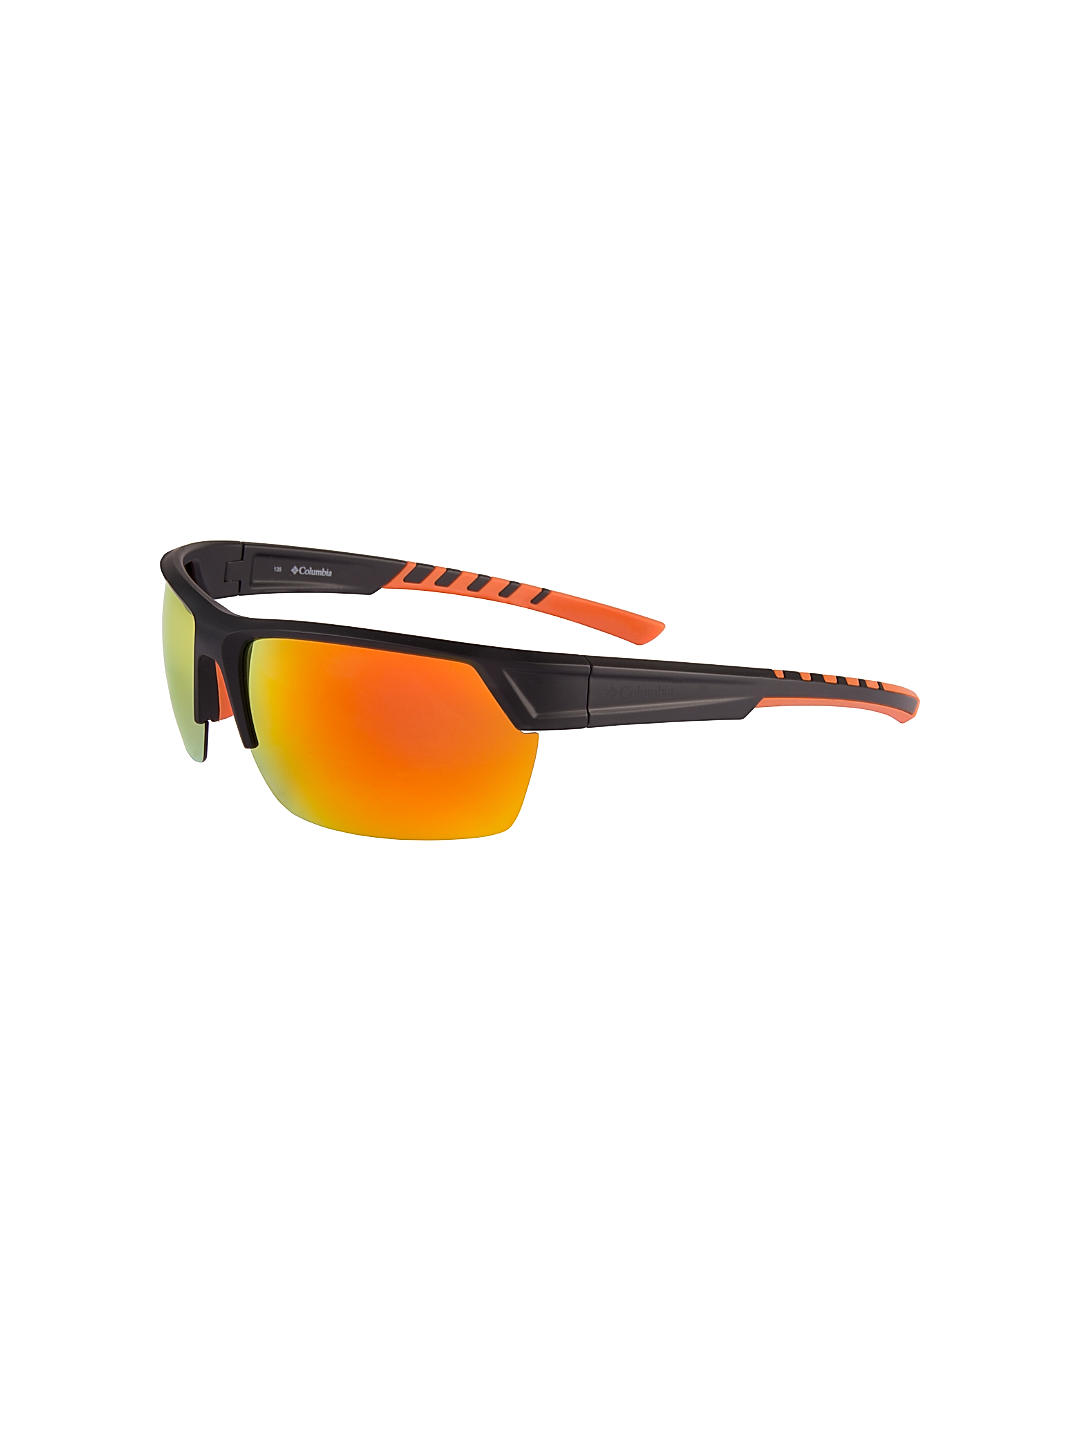 Columbia Men's Peak Racer Sunglasses